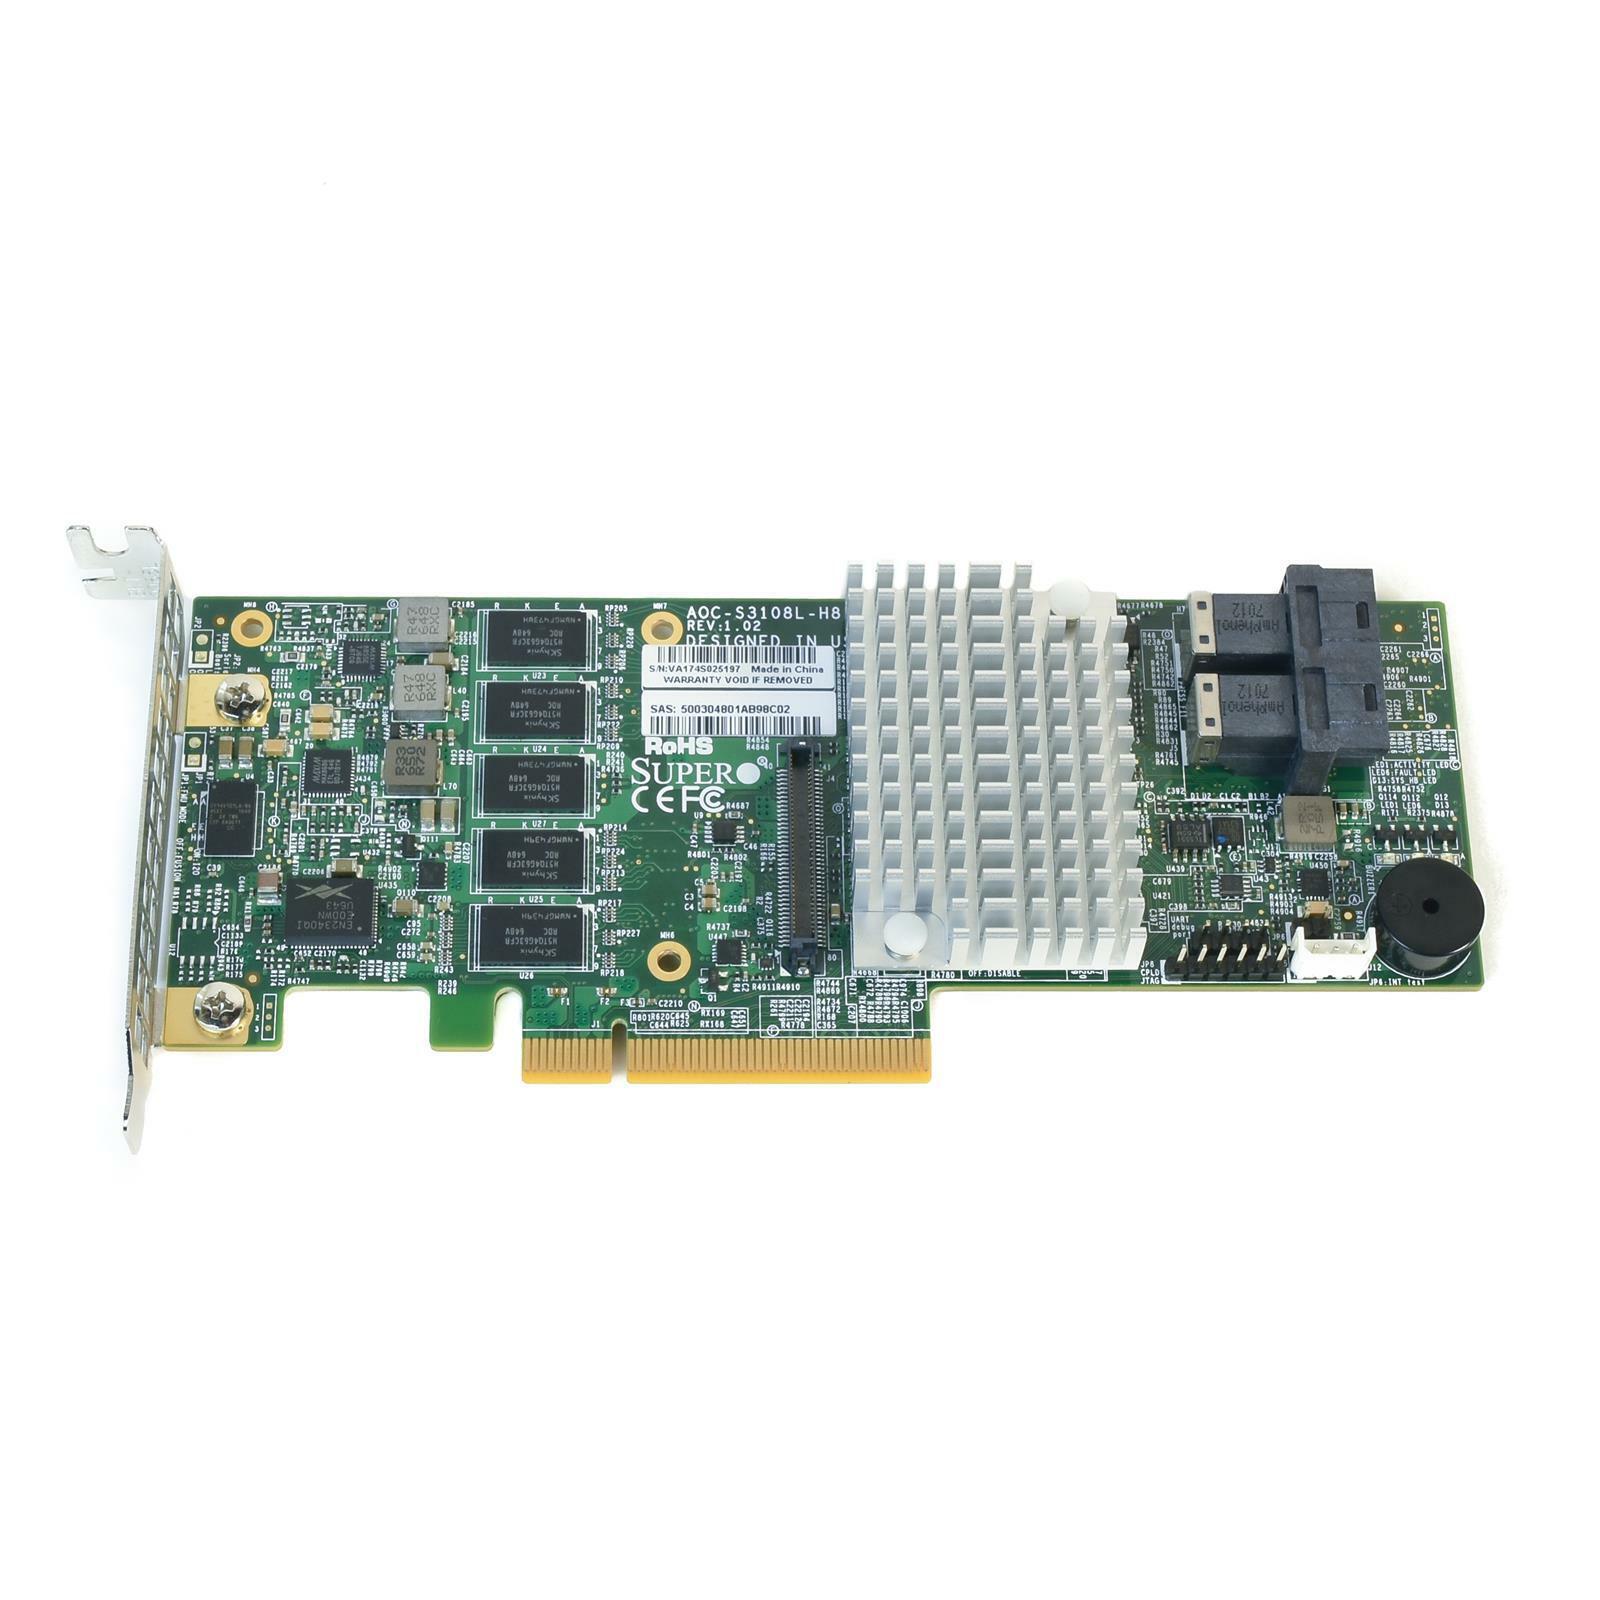 SUPERMICRO AOC-S3108L-H8IR 2GB 8-Port SAS3 12Gbps PCI-e 3.0 RAID Controller LP